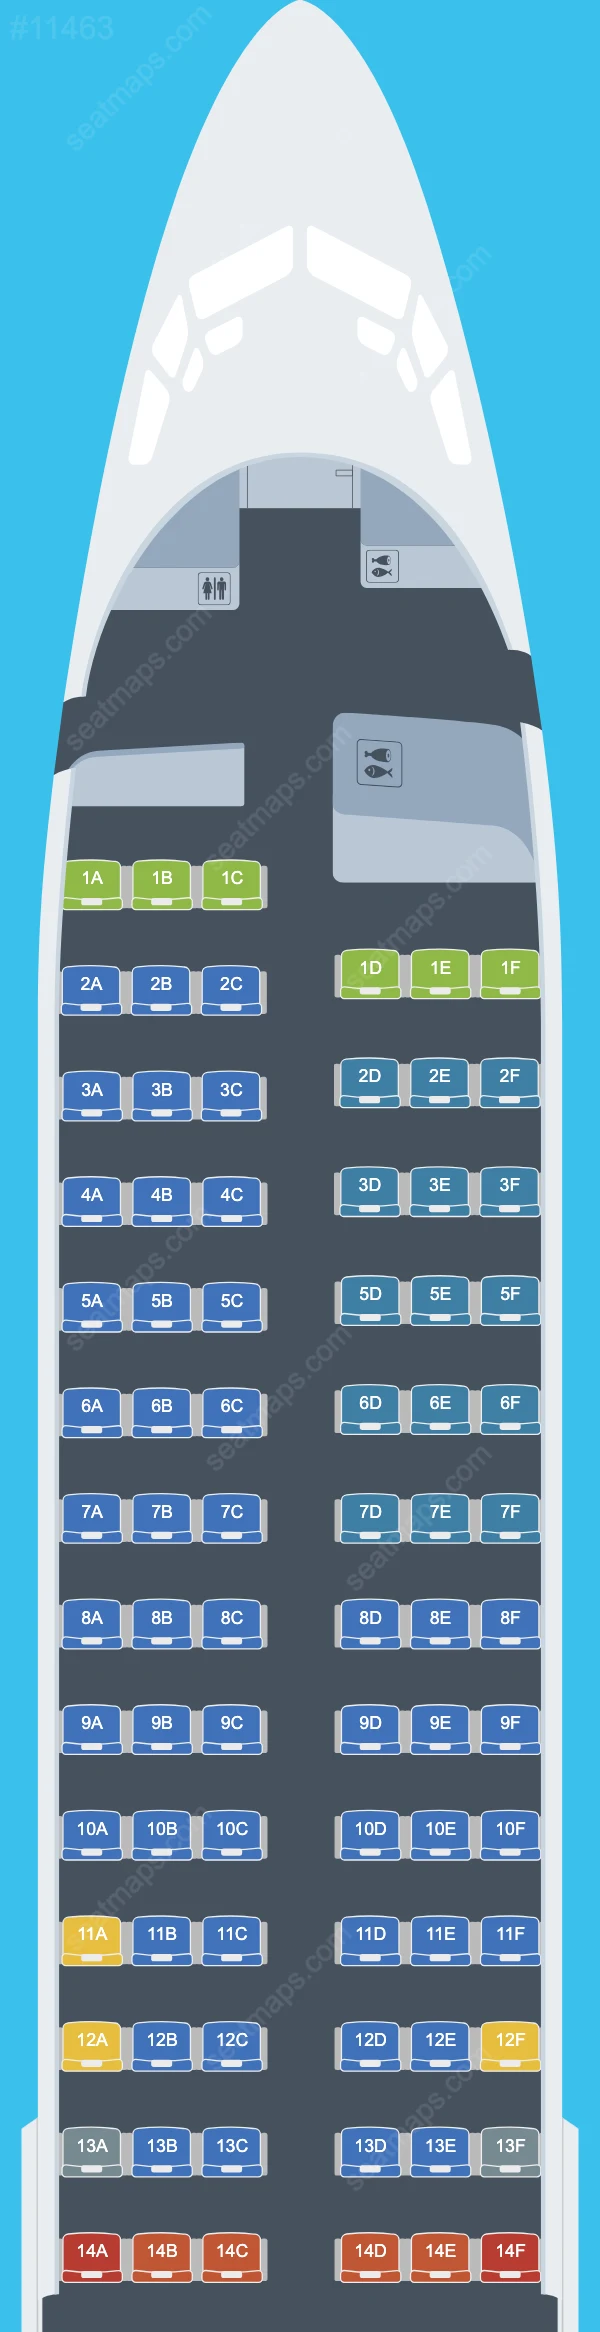 Схема салонов WestJet в самолетах Boeing 737-800 737-800 V.2